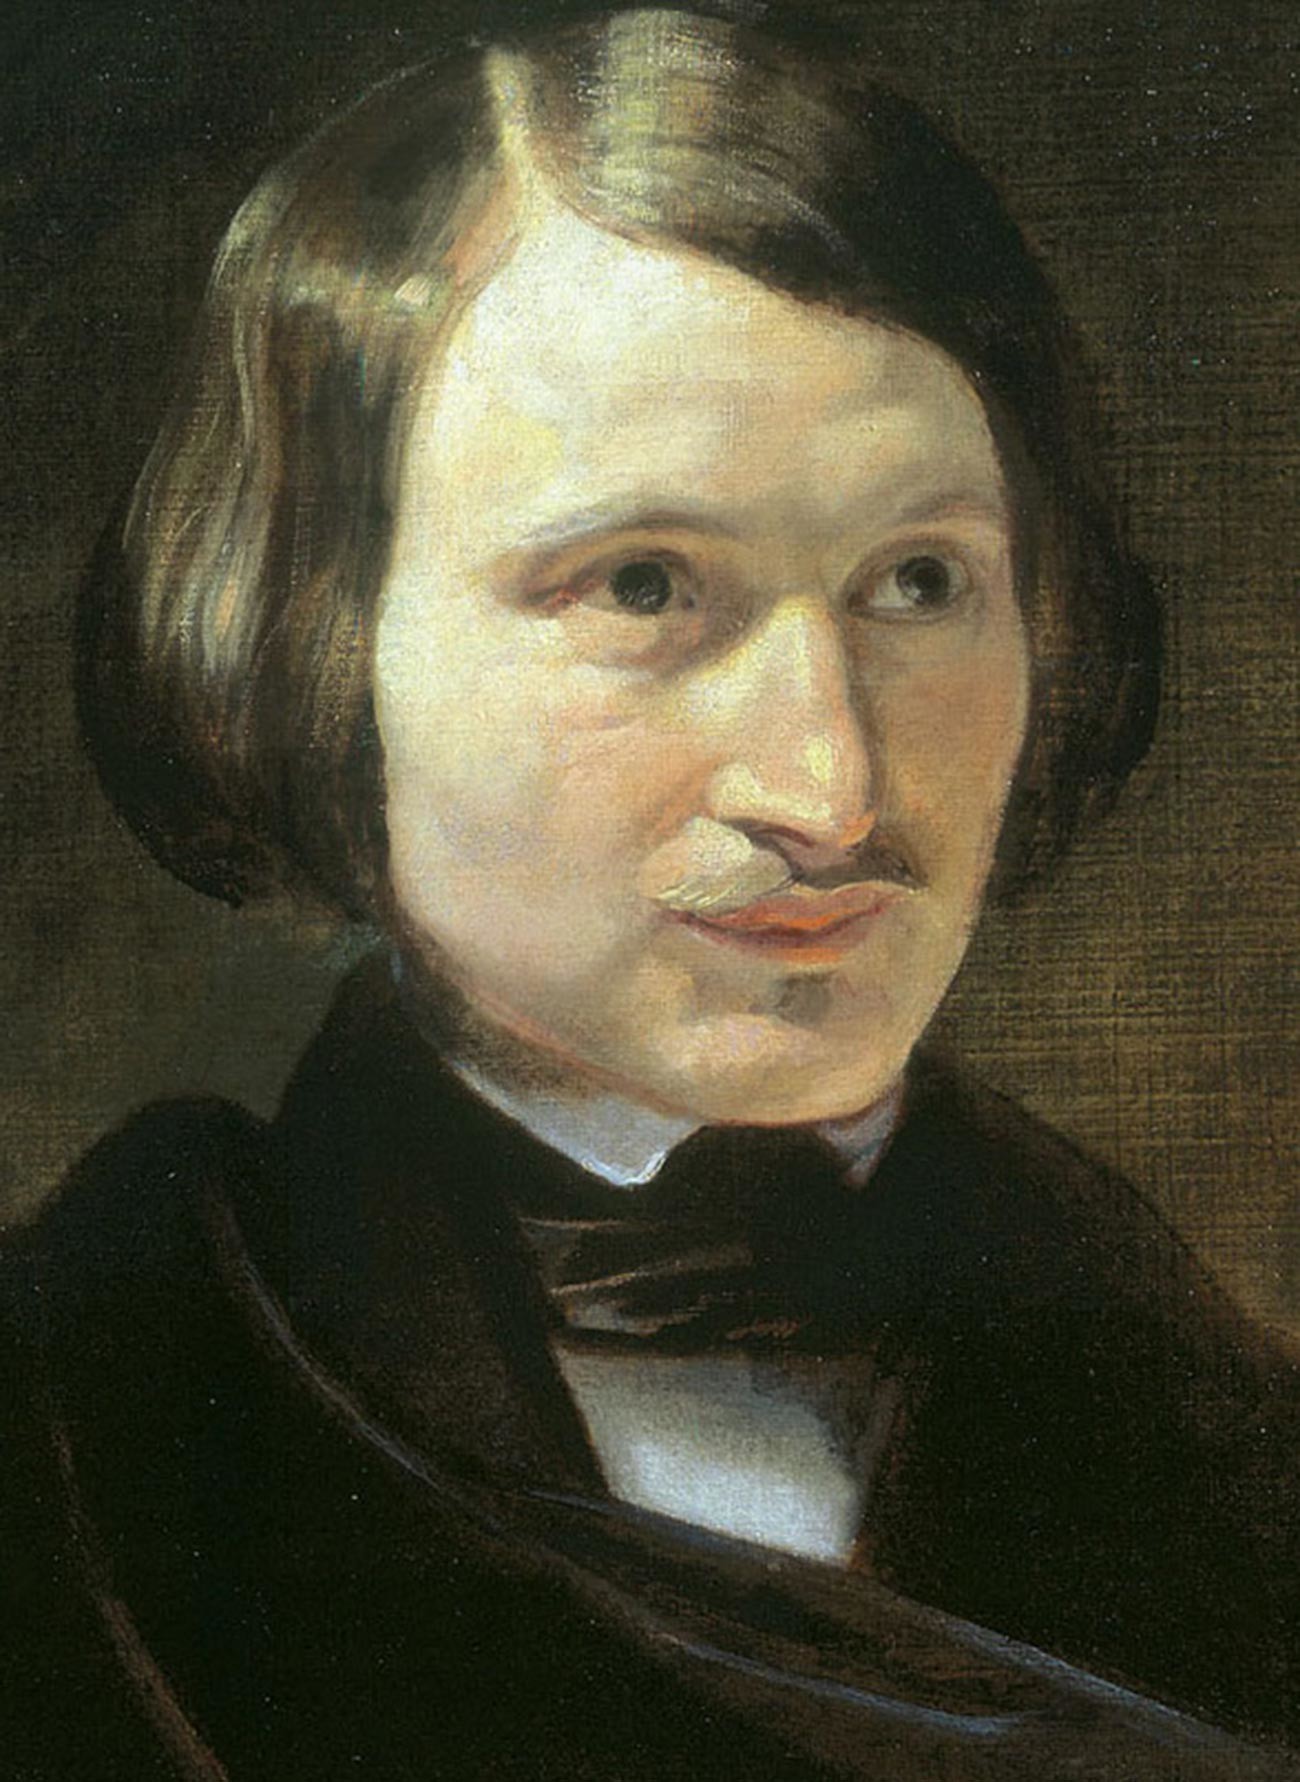 Porträt von Nikolai Gogol von Otto Friedrich Theodor von Möller.